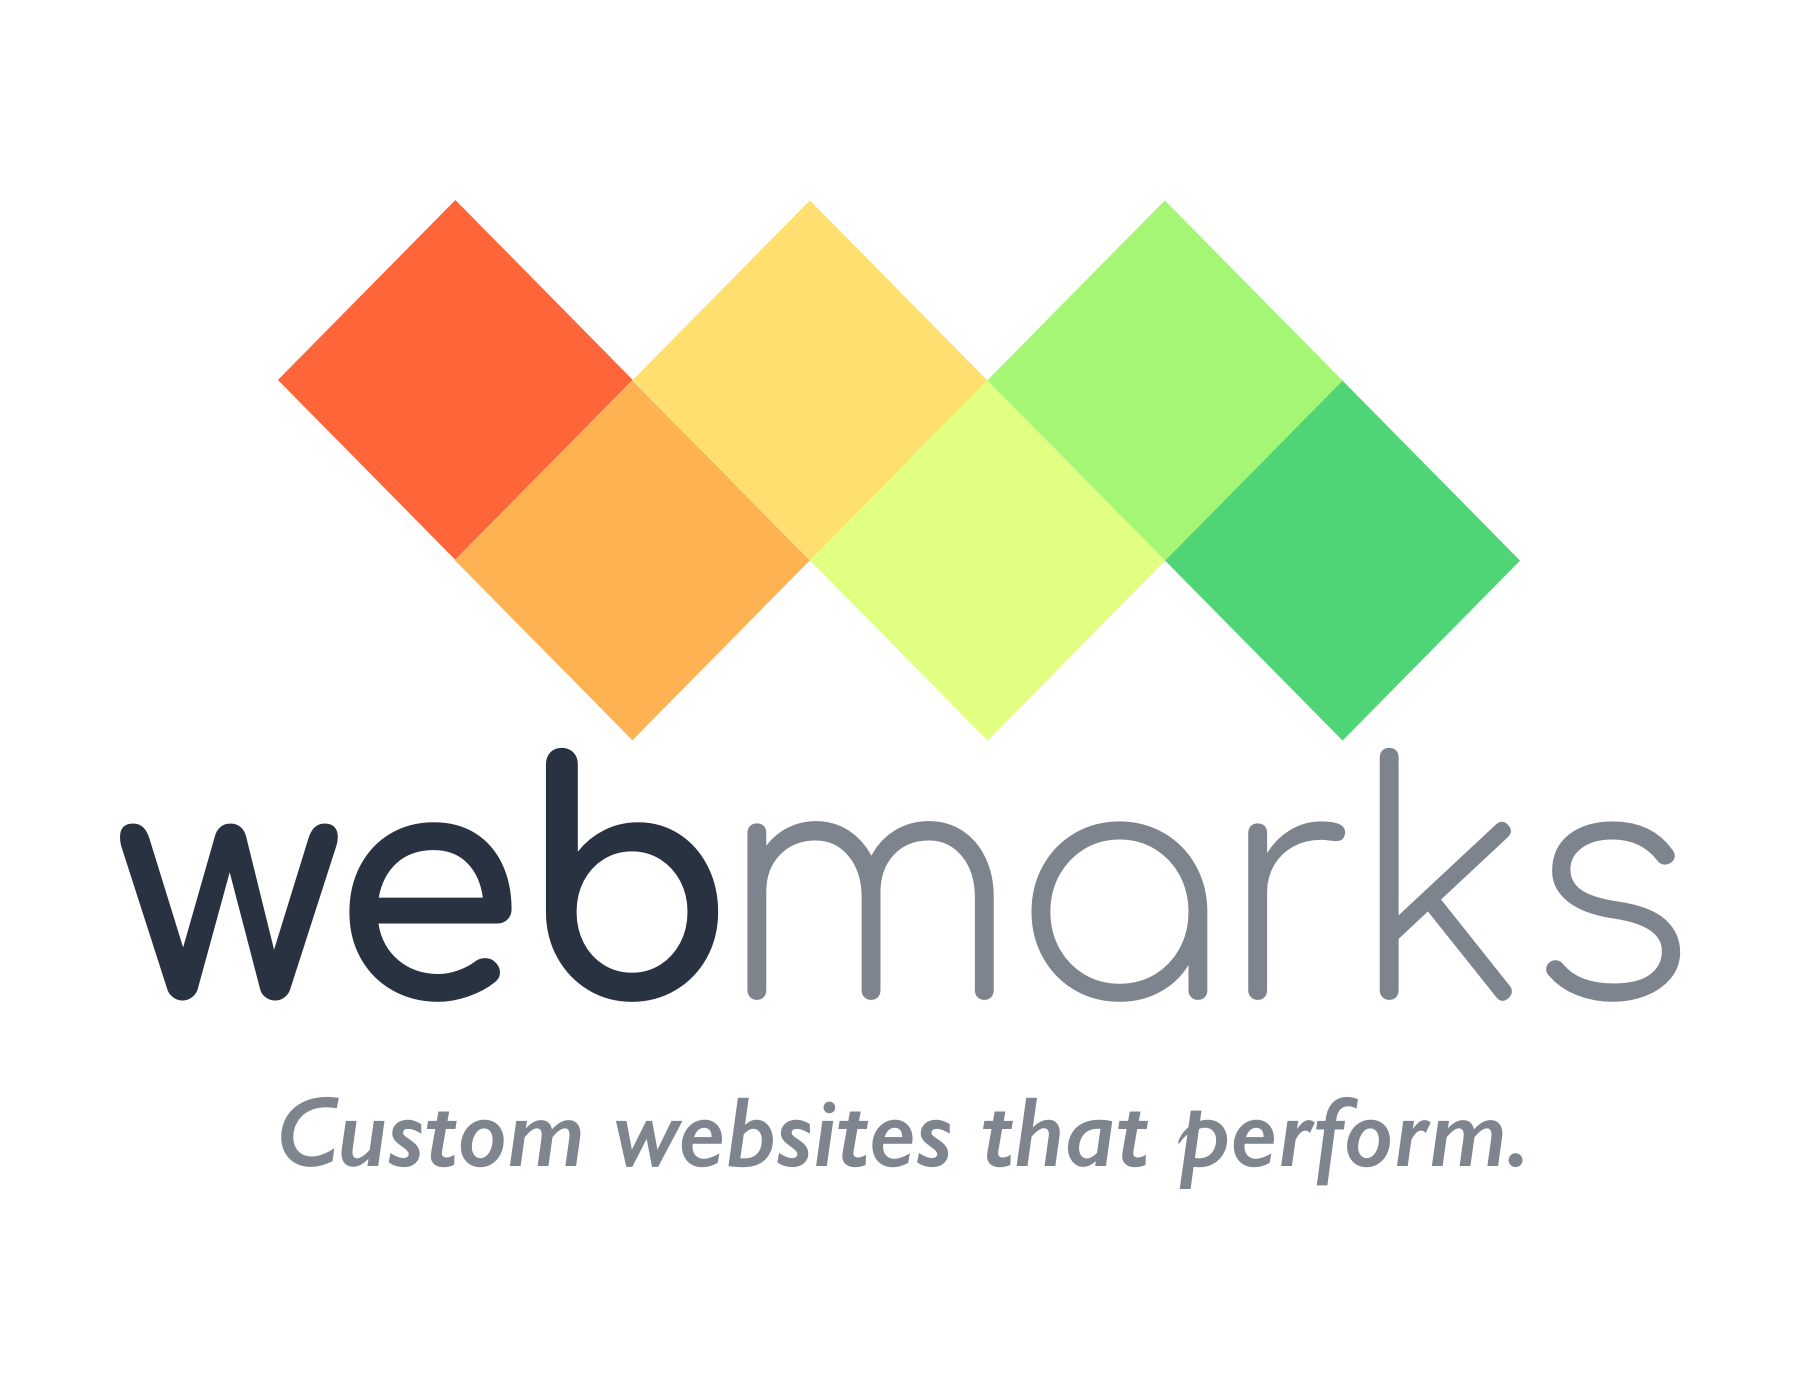 webmarks-logo-color-tagline-transparent.png